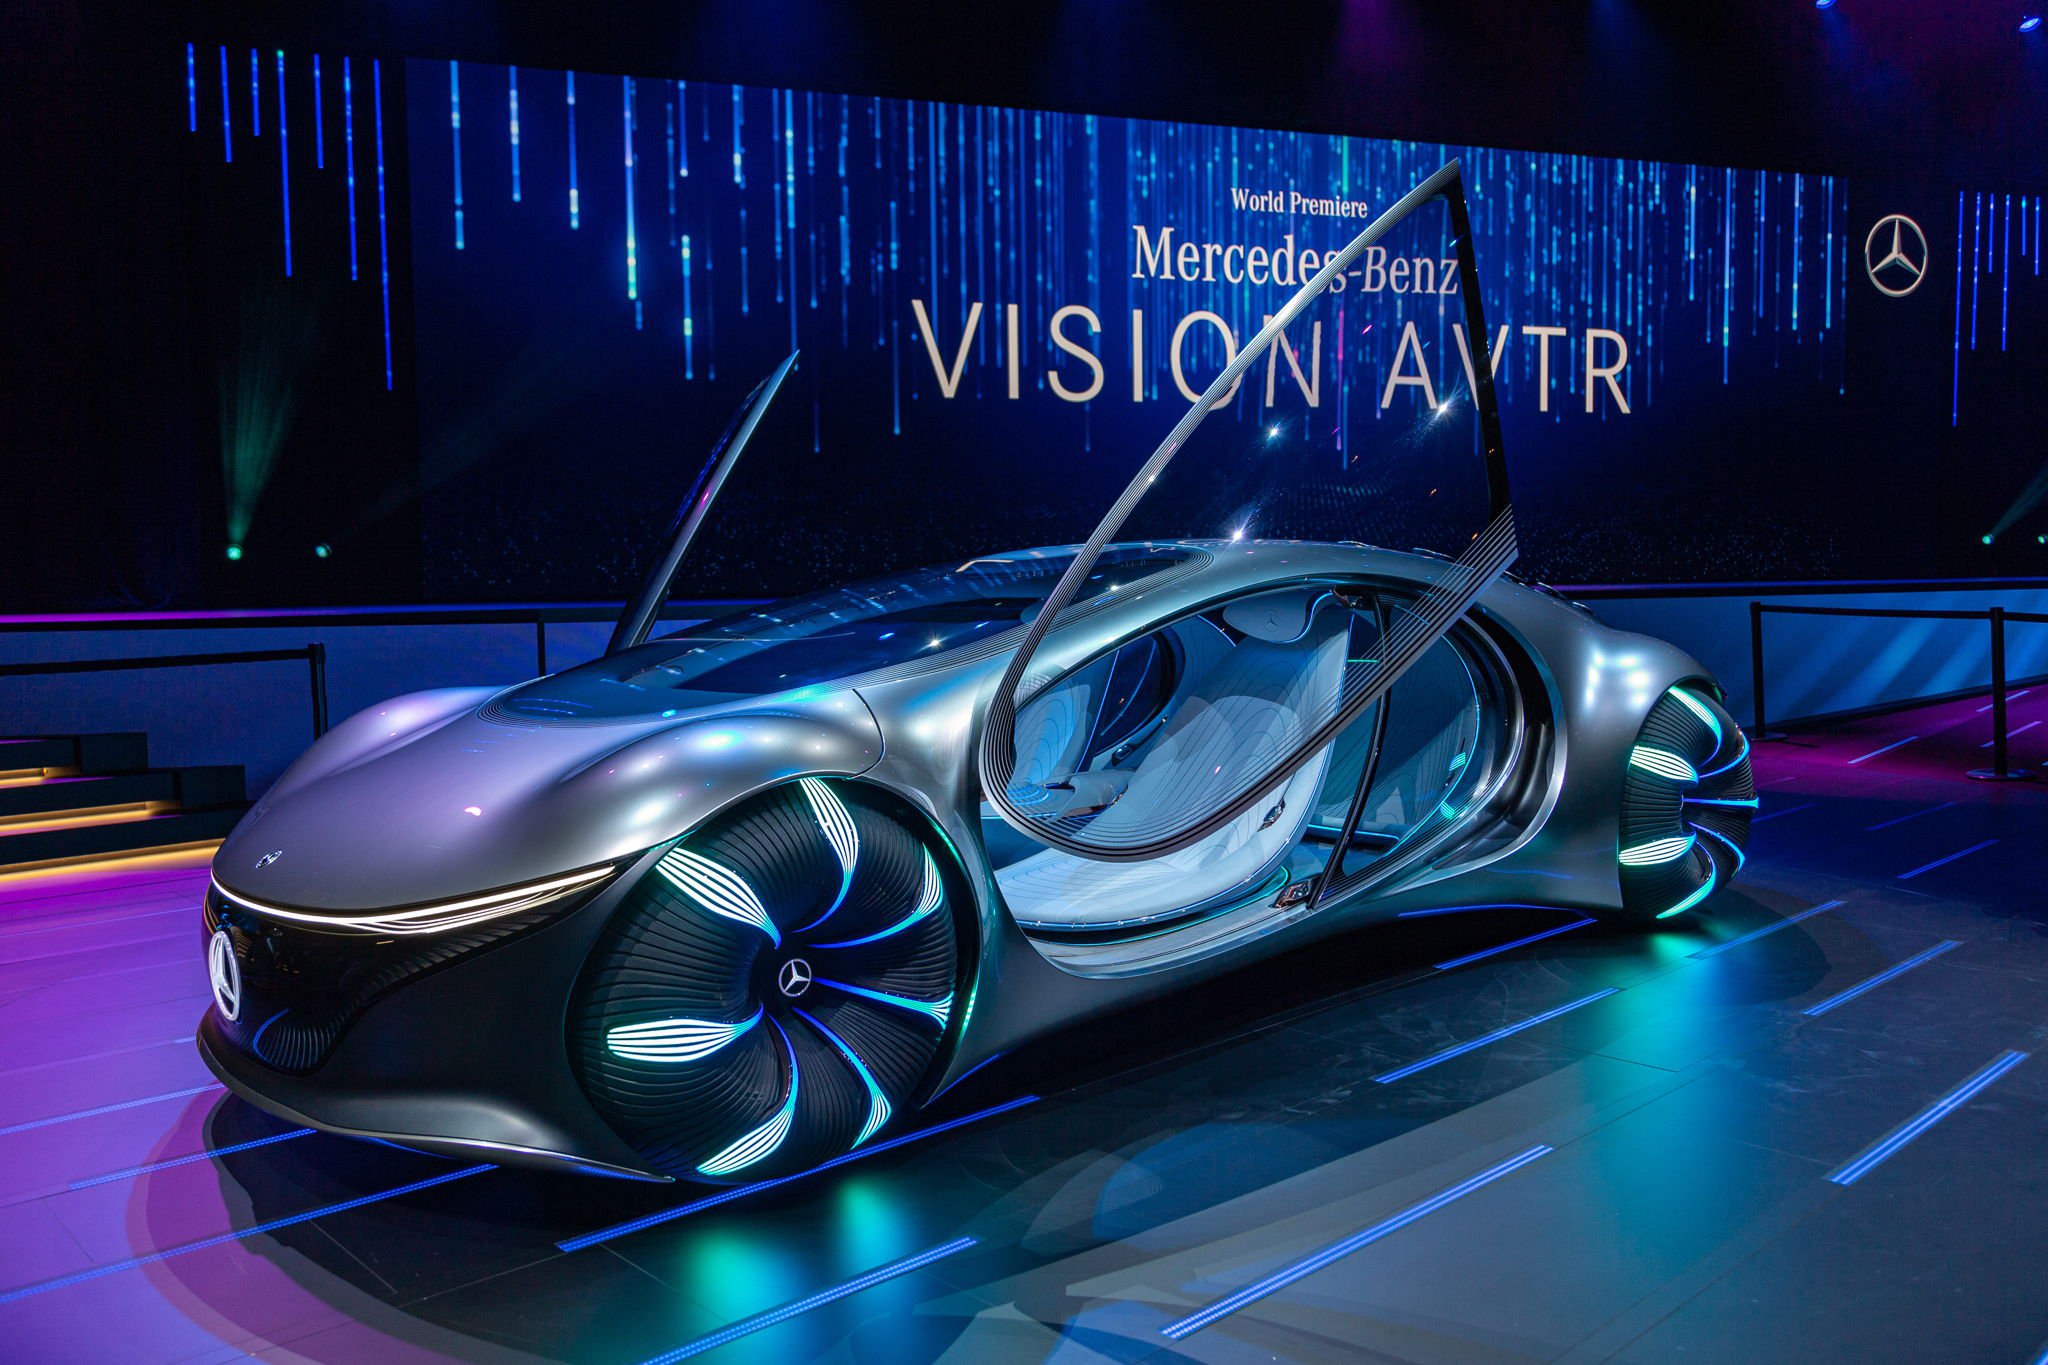 Così la concept Mercedes si ispira al film Avatar